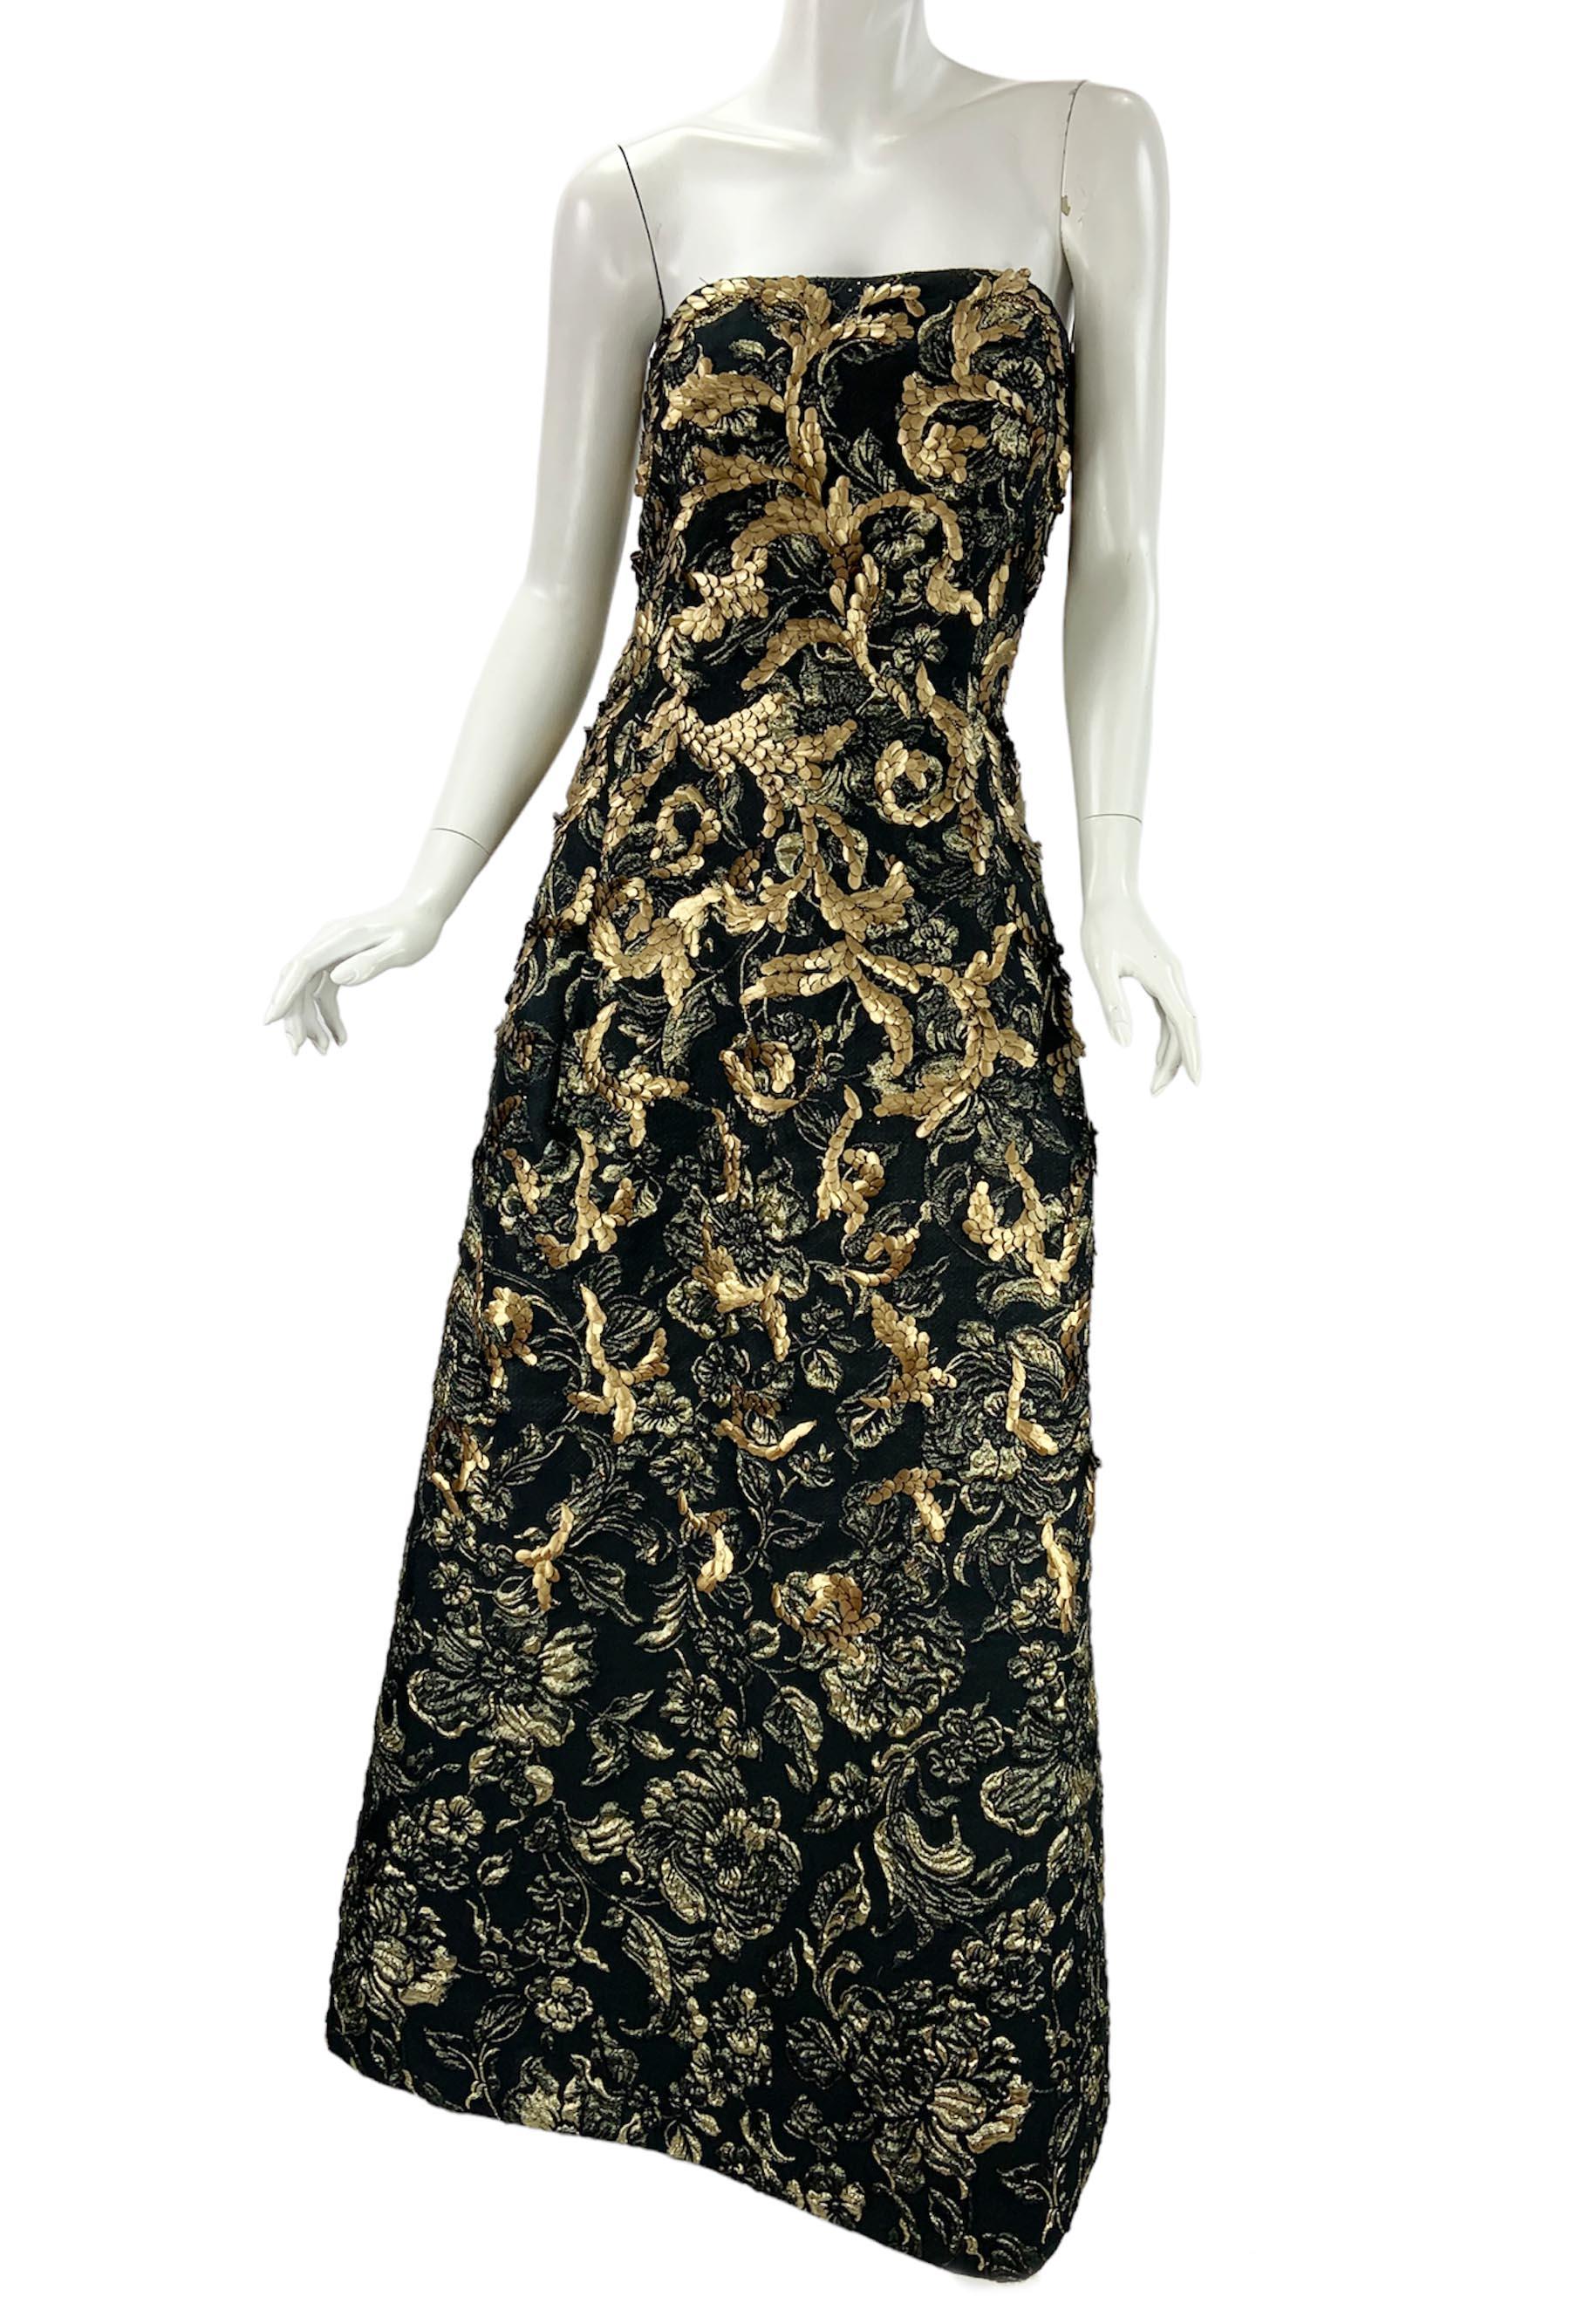 Oscar de la Renta FW 2014 Runway Museum Red Carpet Black Gold Gown Dress L / XL For Sale 1